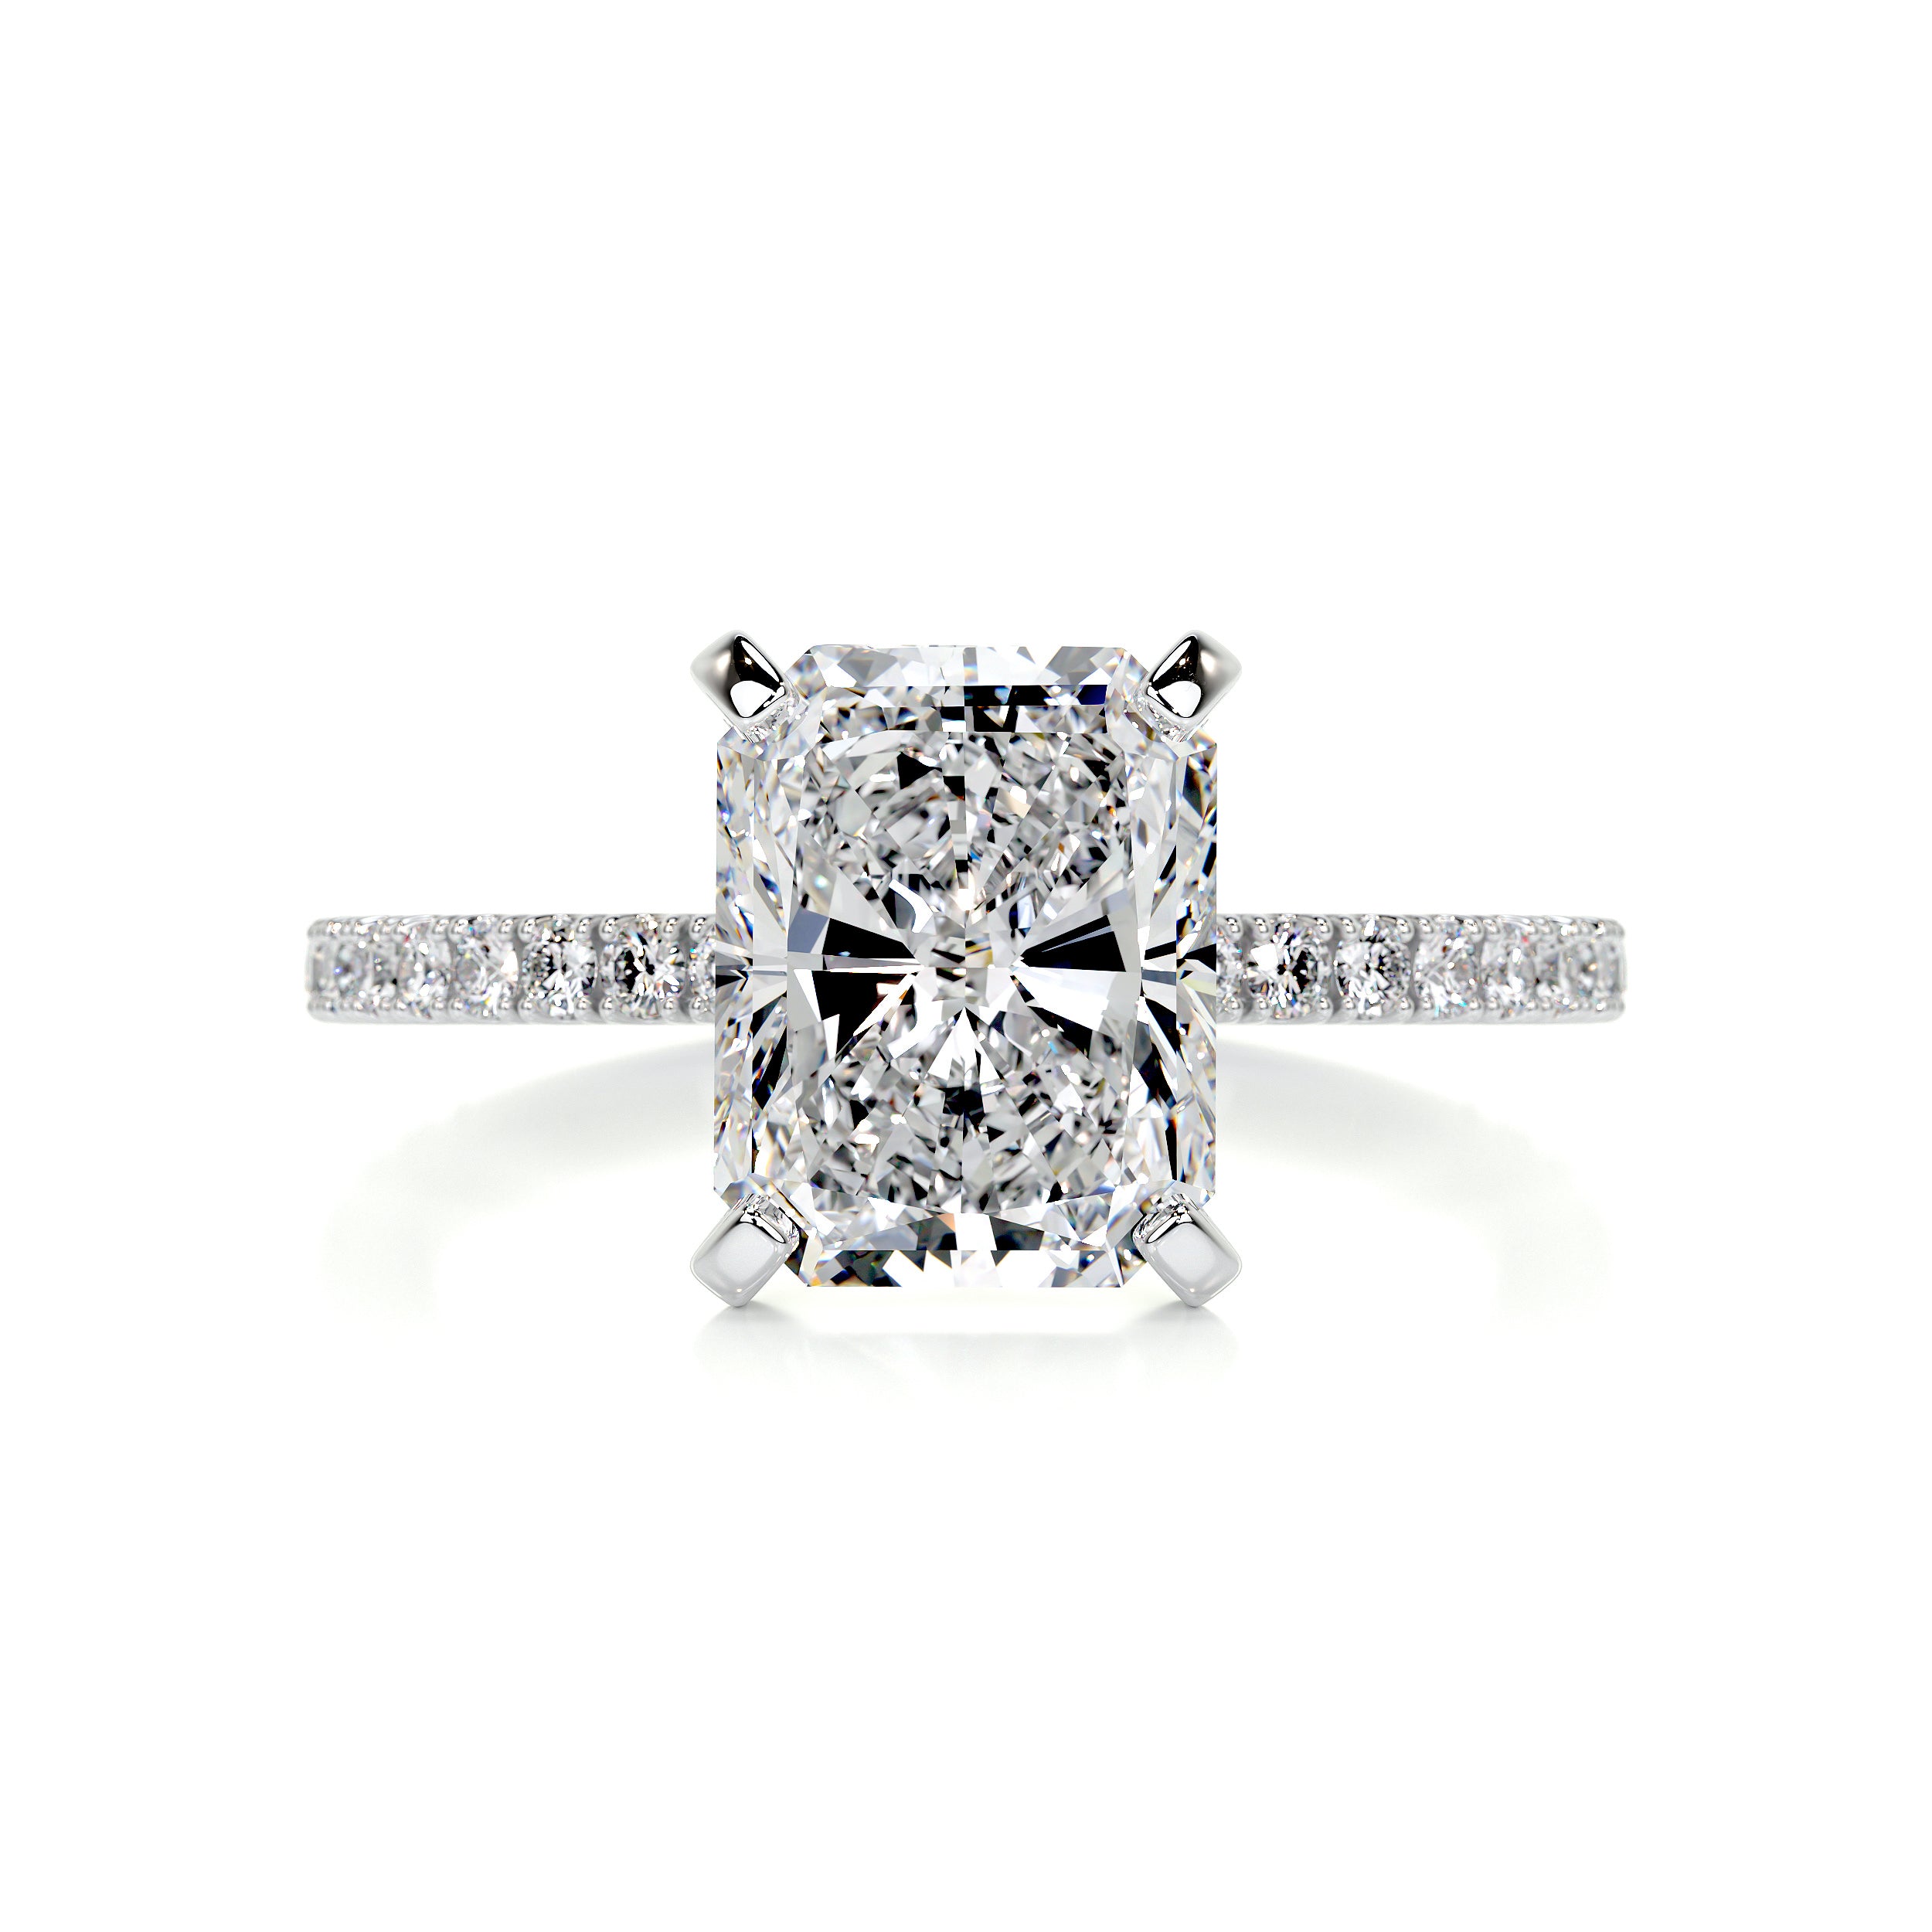 Audrey Diamond Engagement Ring   (3.30 Carat) -18K White Gold